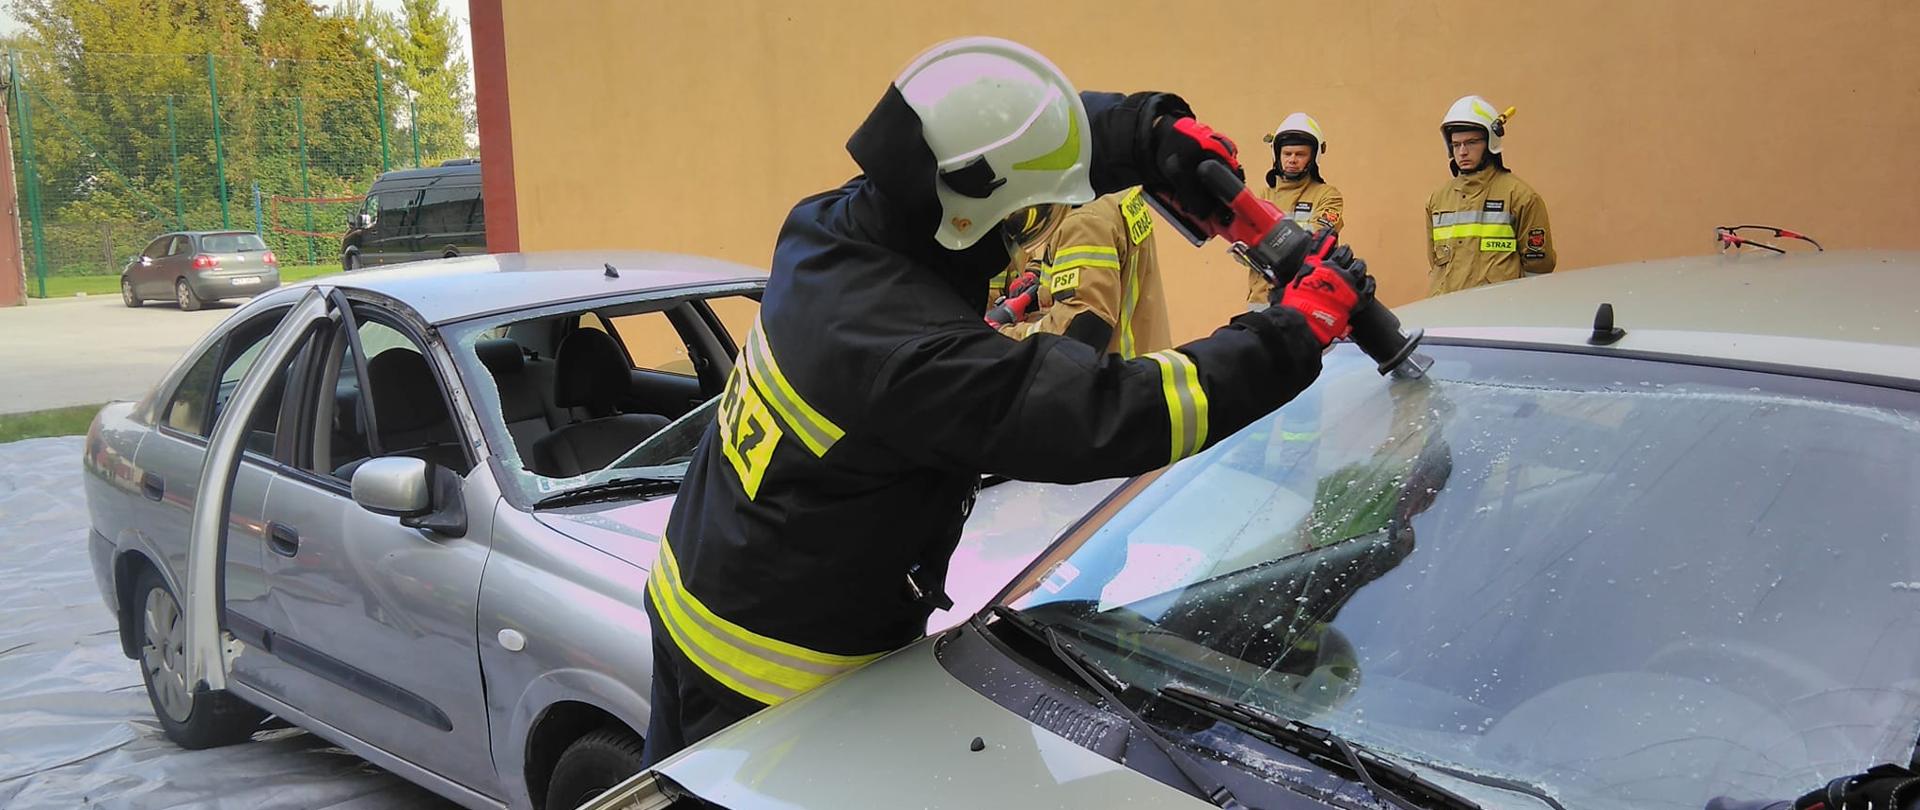 Strażak wycina przednia szybę w samochodzie przy użyciu elektronarzędzia